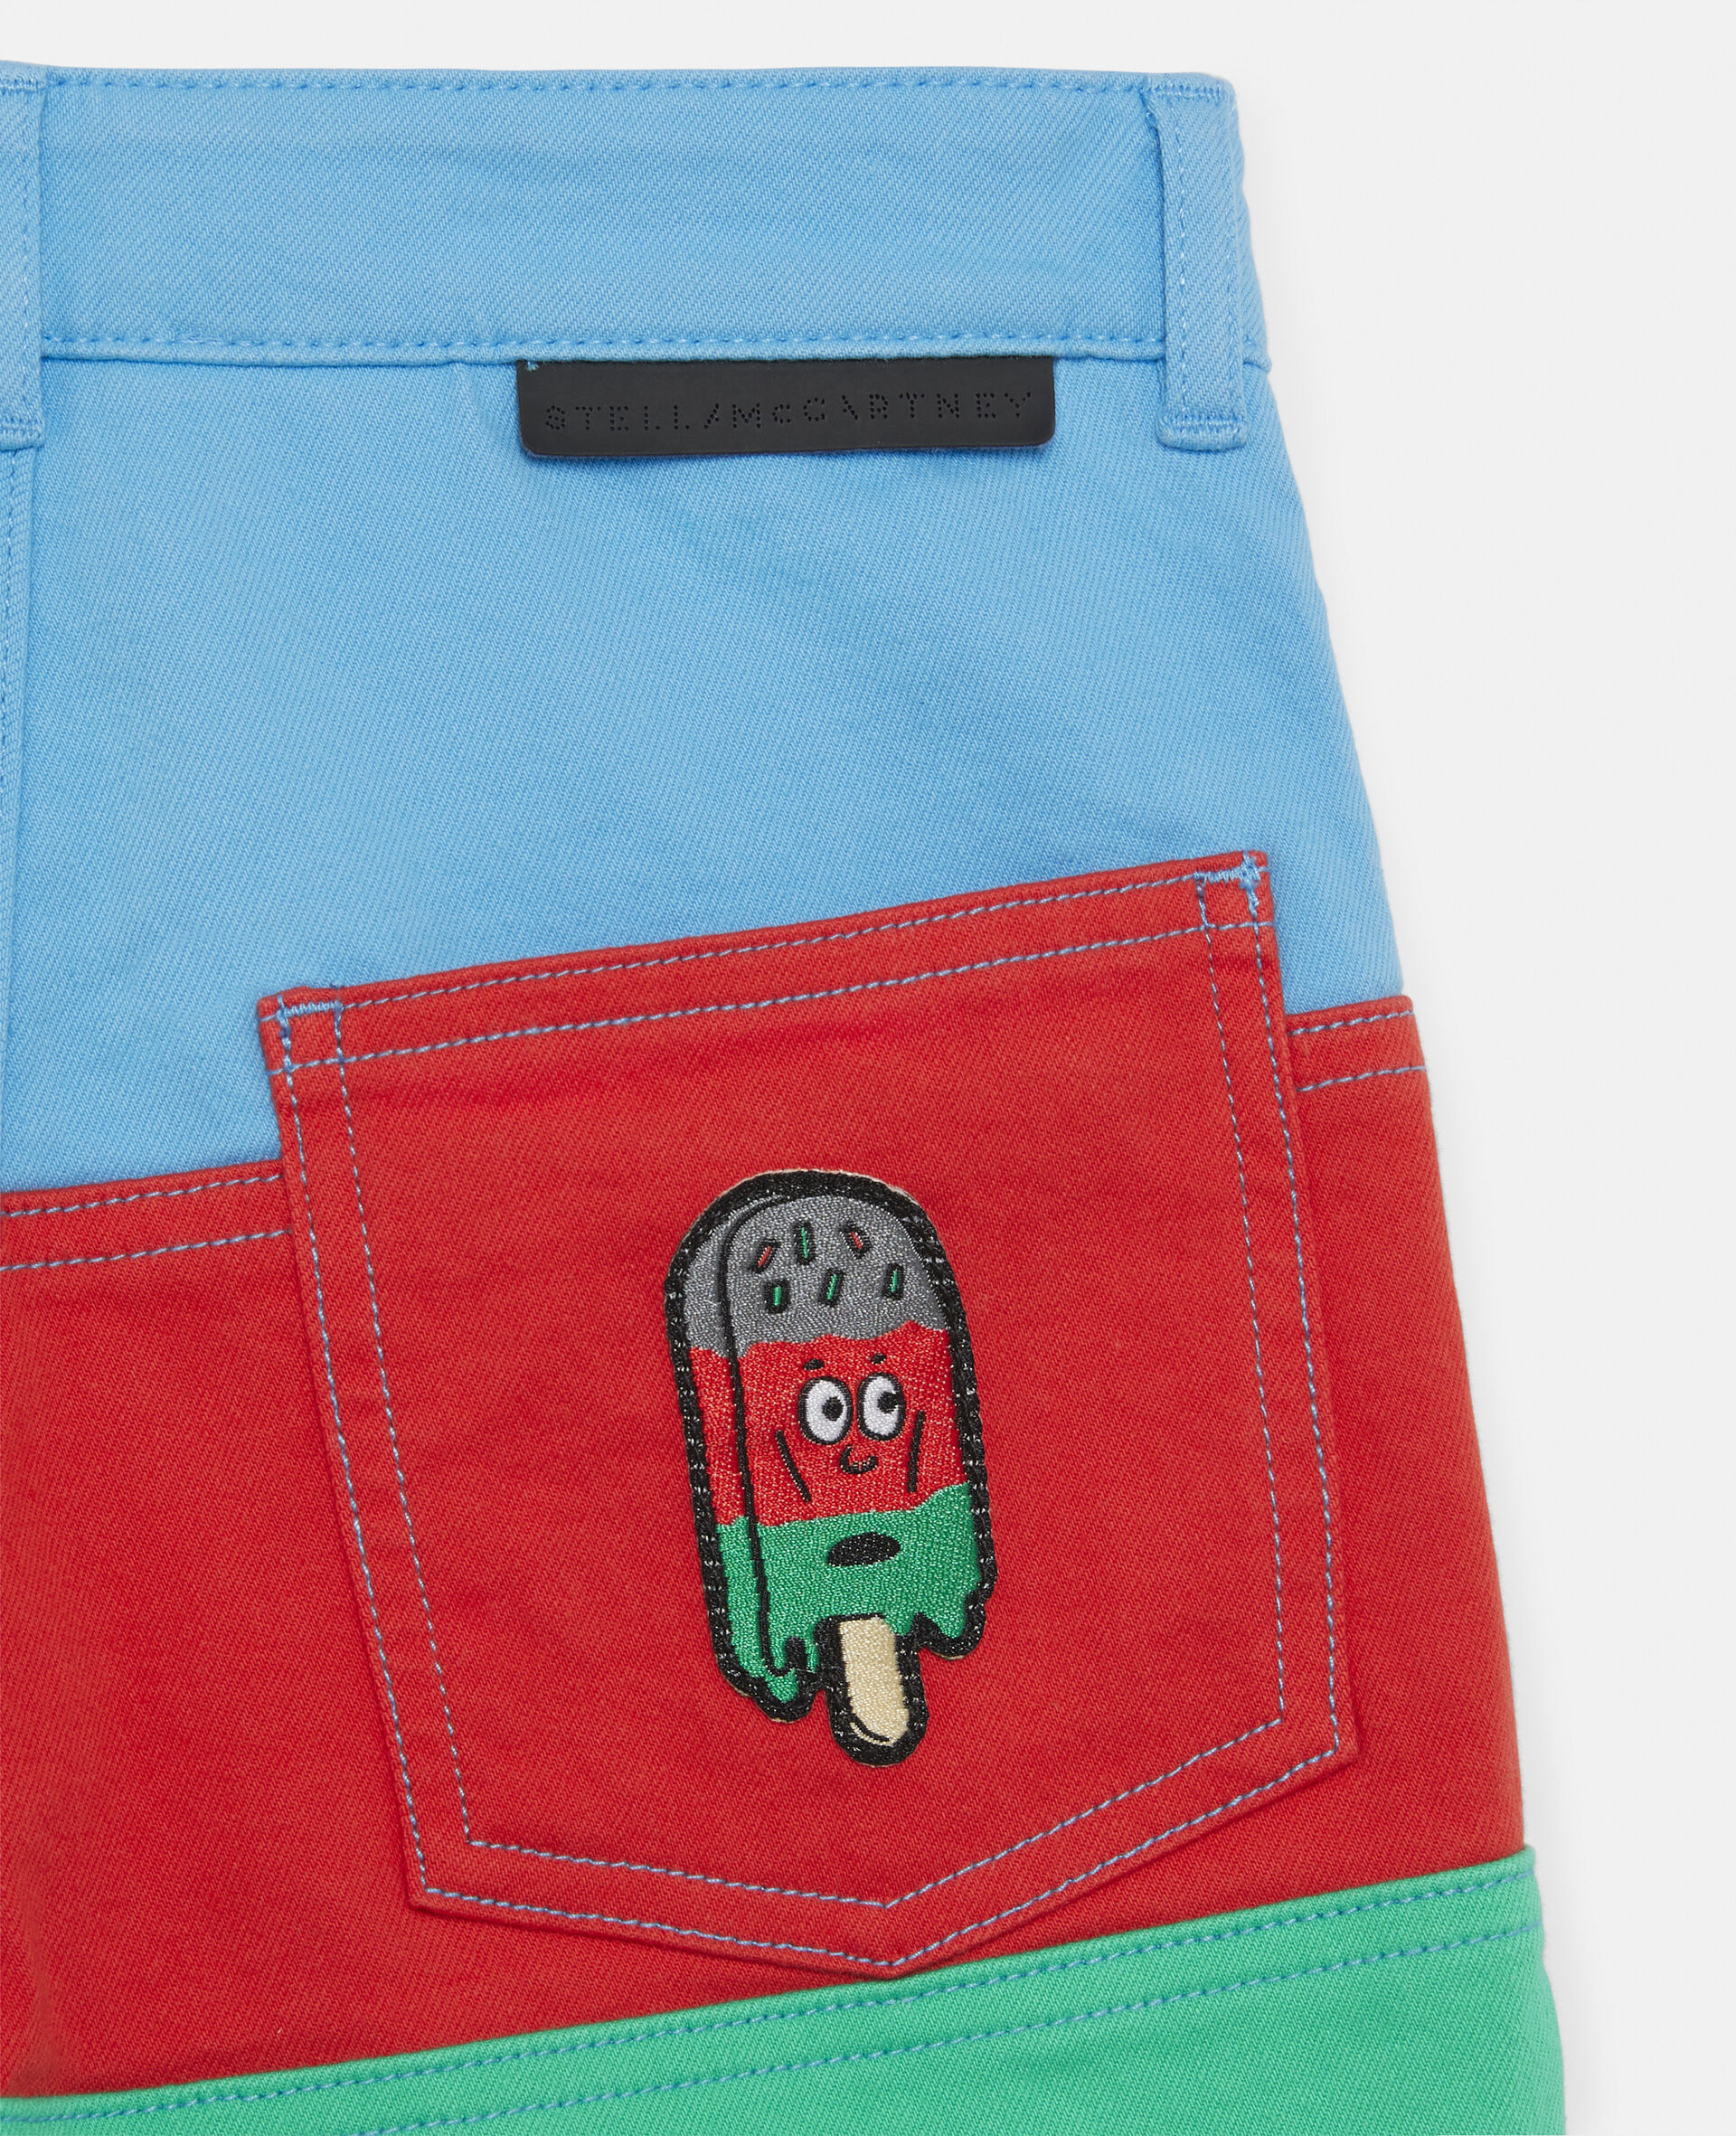 Colour Block Denim Shorts -Multicolour-large image number 3